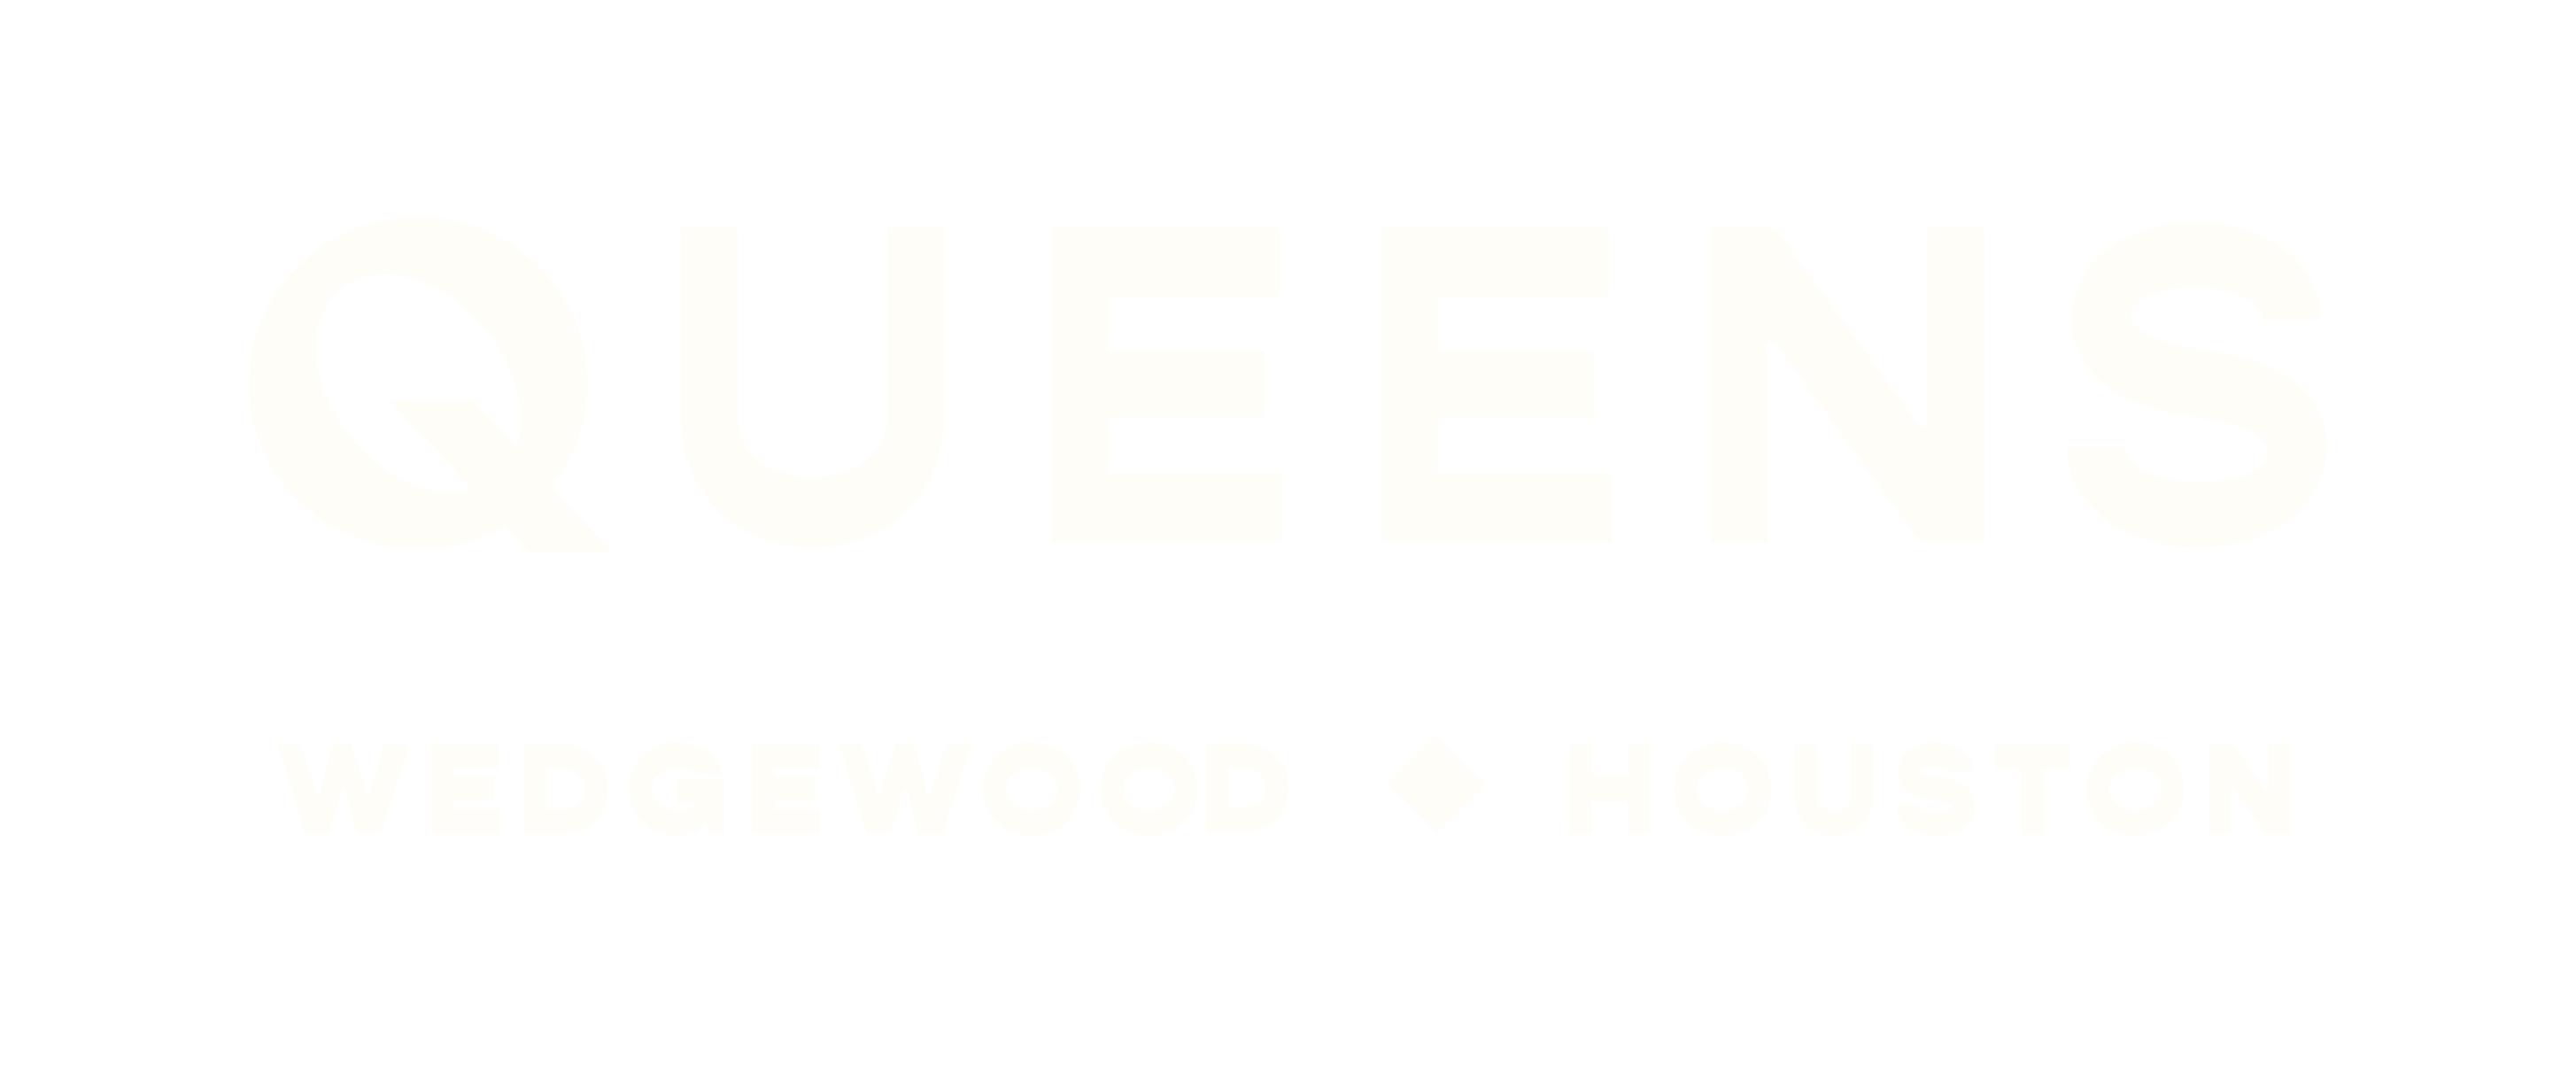 Queens Wedgewood Houston